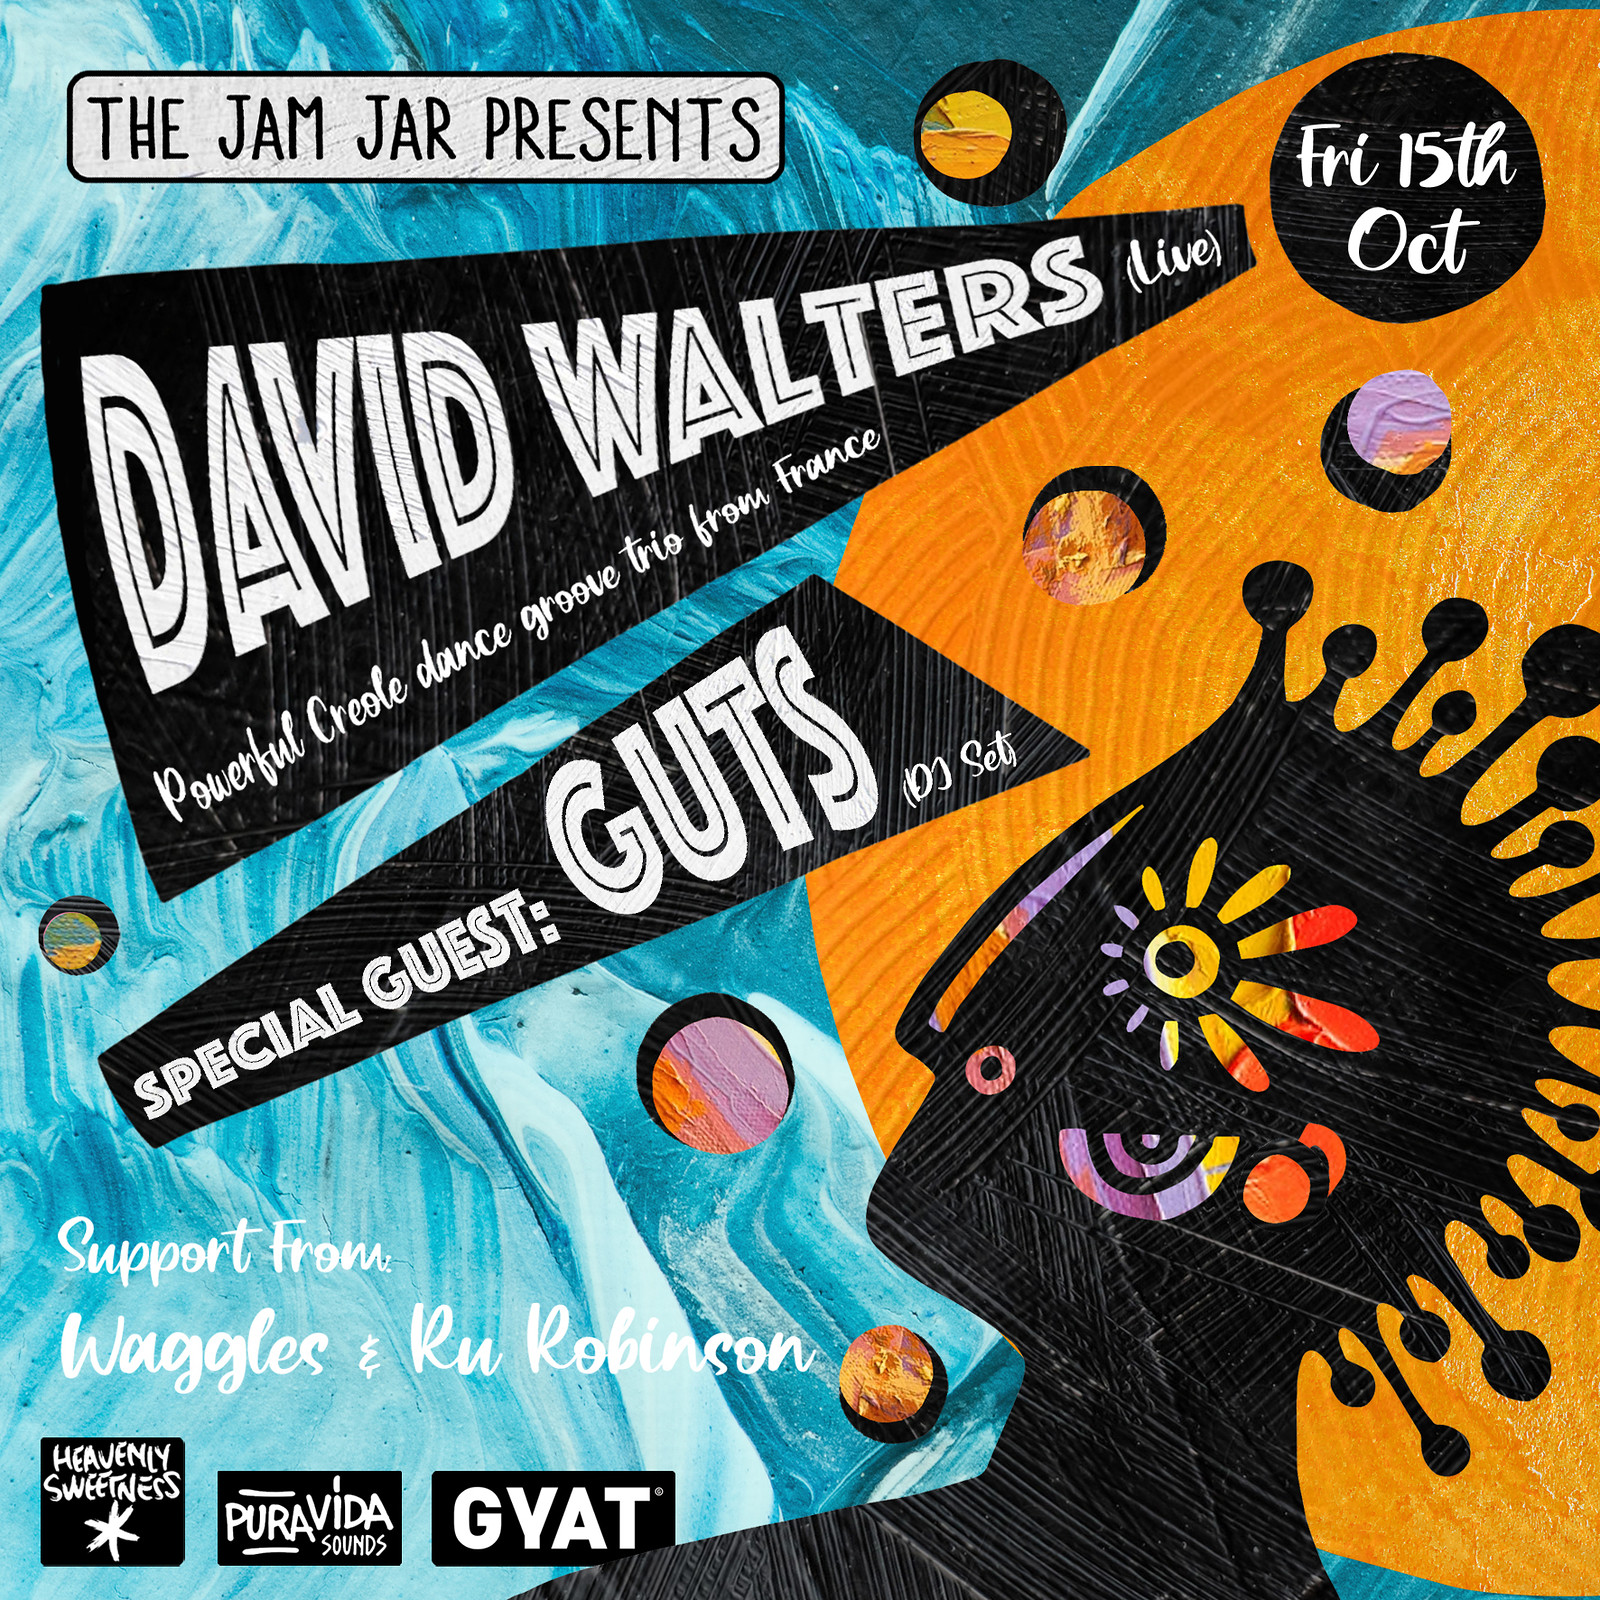 David Walters at Jam Jar